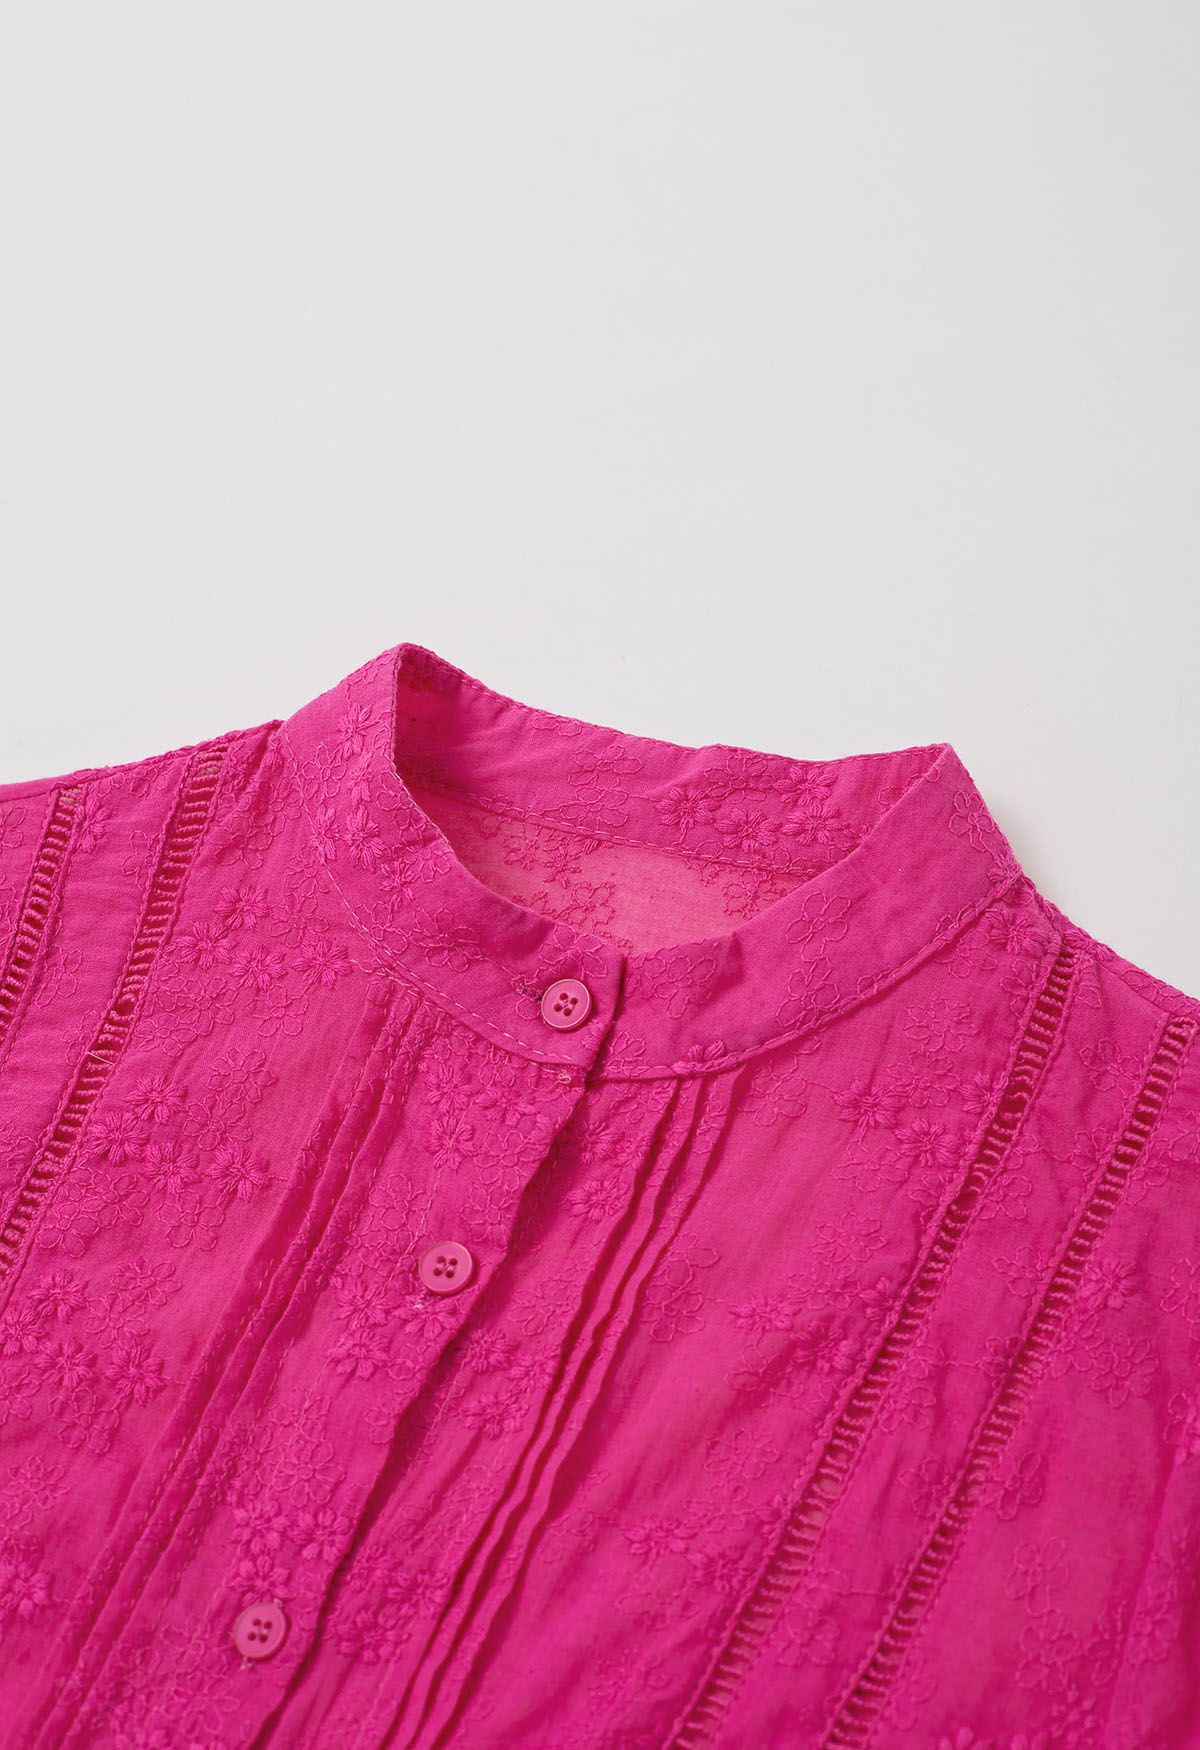 قميص فلوريت مطرز بأزرار سفلية باللون الوردي الساخن